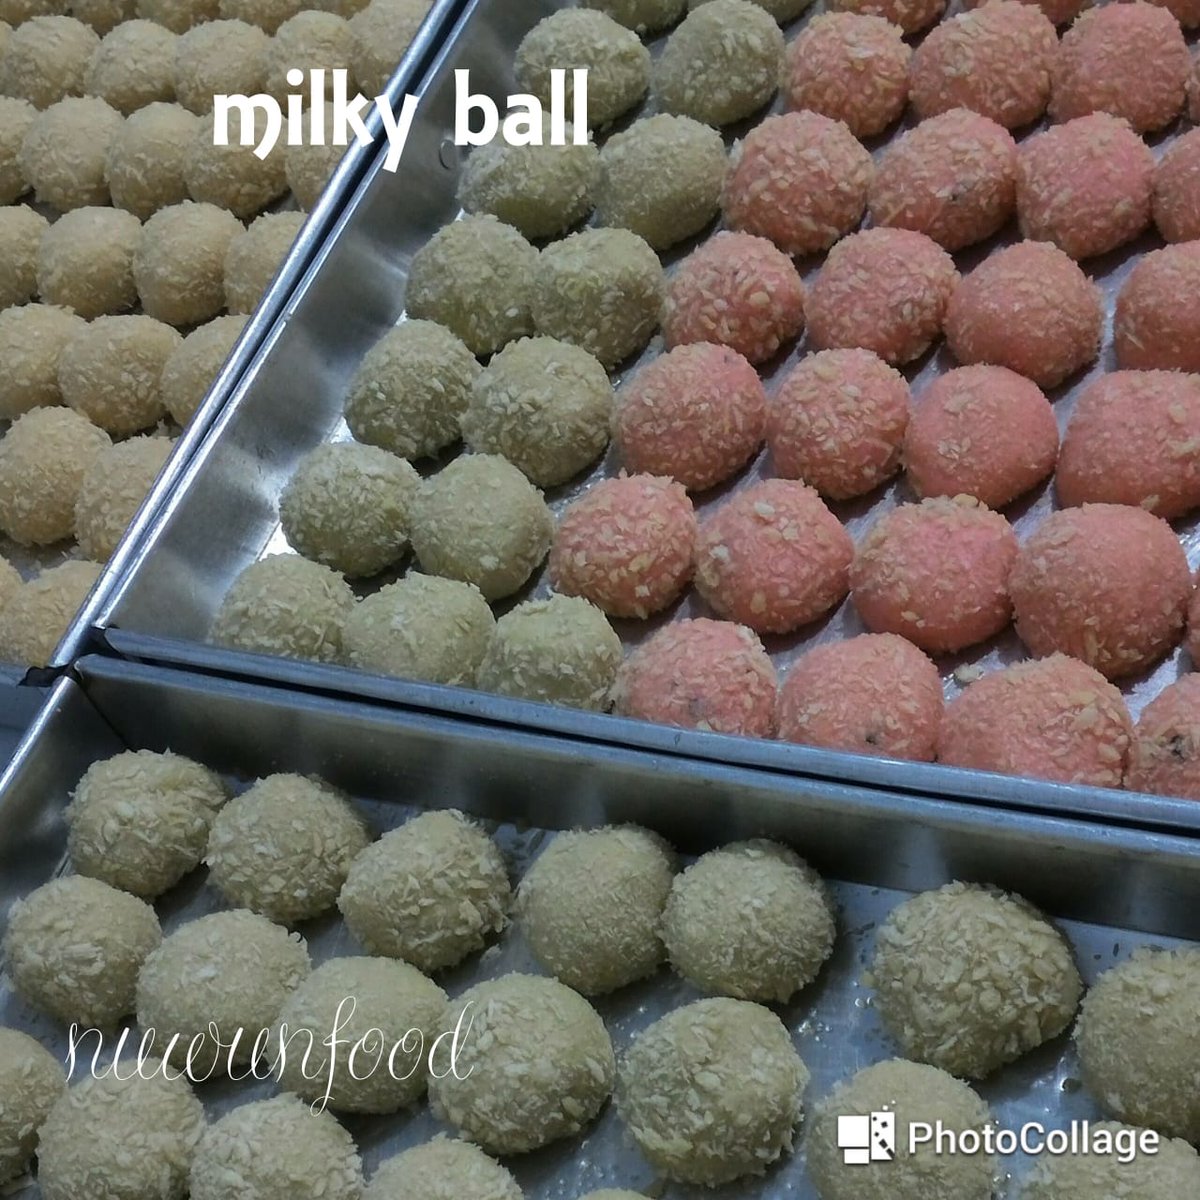 milky ball... #kukis berbentuk bola-bola yang terbuat dari #susu. tersedia 5 macam varian, dan bisa pesan mix dalam satu kemasan lho. #milkyball  #tanpapengawet #tanpapemanisbuatan #infomalang #kuemalang #anak #malangkuliner #malangfoodies #malang #oleholehmalang #jajanananak